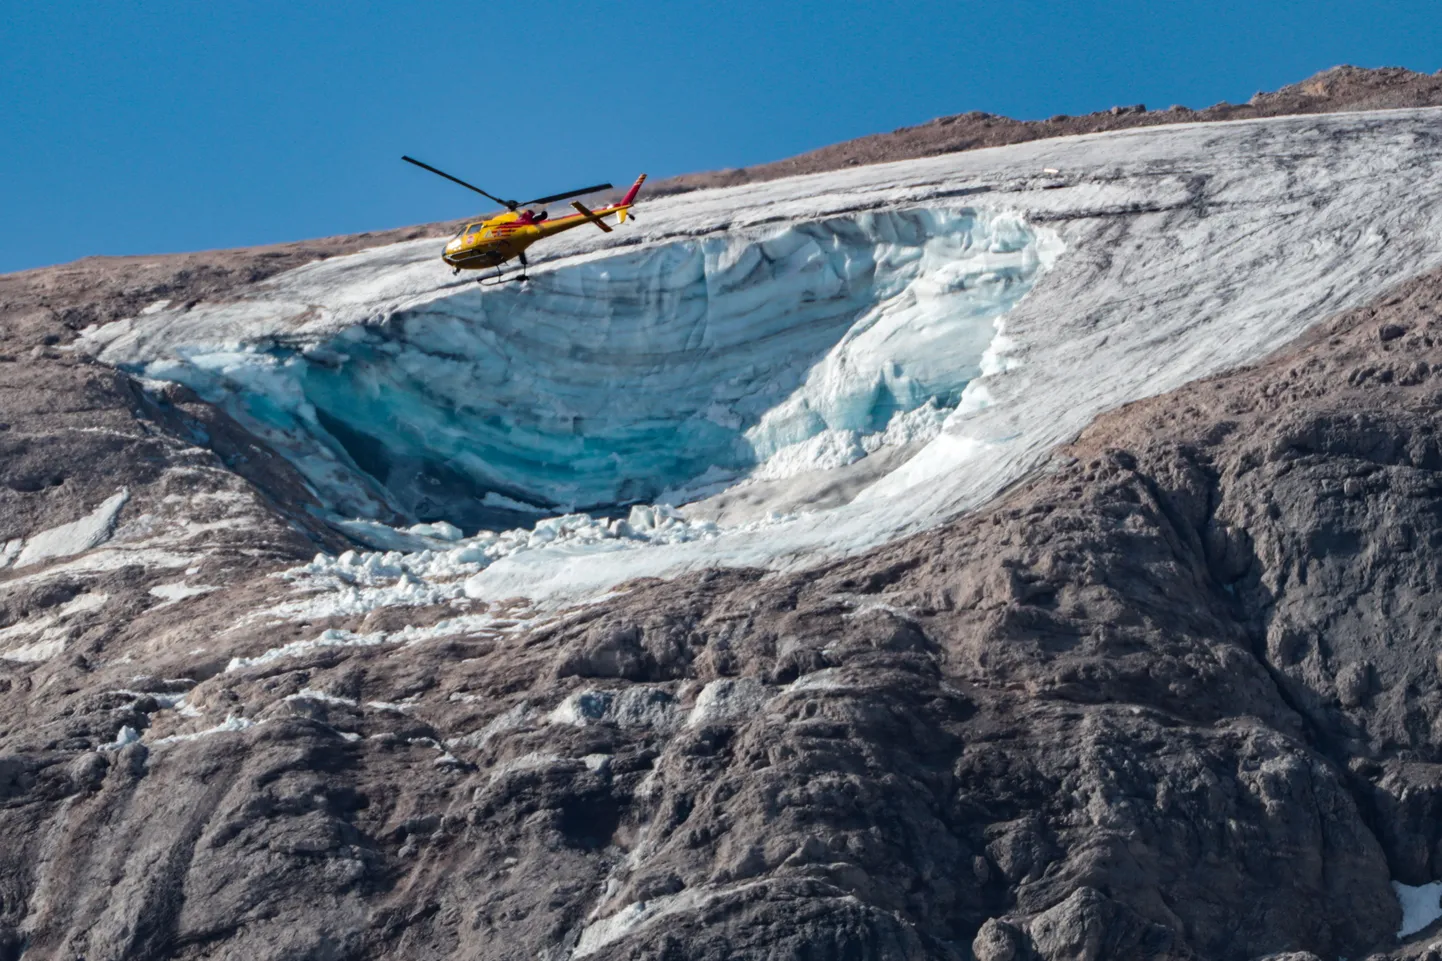 Päästekopter lendamas 4. juulil 2022 Põhja-Itaalias Dolomiitides Marmolada mäe kohal, kus osa liustikust ära kukkus. Hukkus vähemalt kuus mägironijat ning 15 mägironijat otsitakse